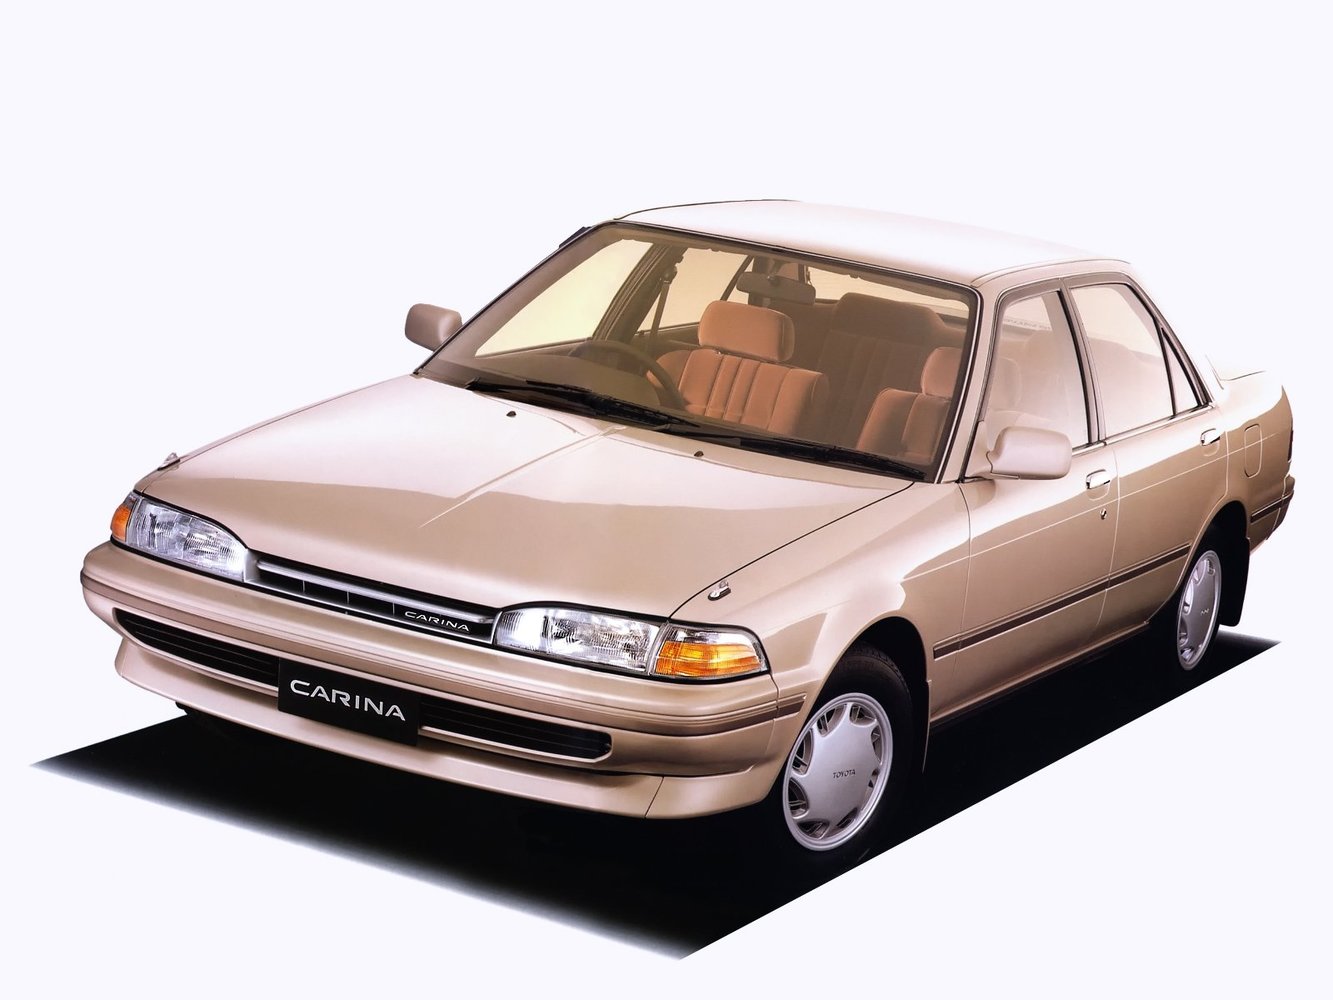 хэтчбек 5 дв. Toyota Carina 1988 - 1992г выпуска модификация 1.6 AT (98 л.с.)